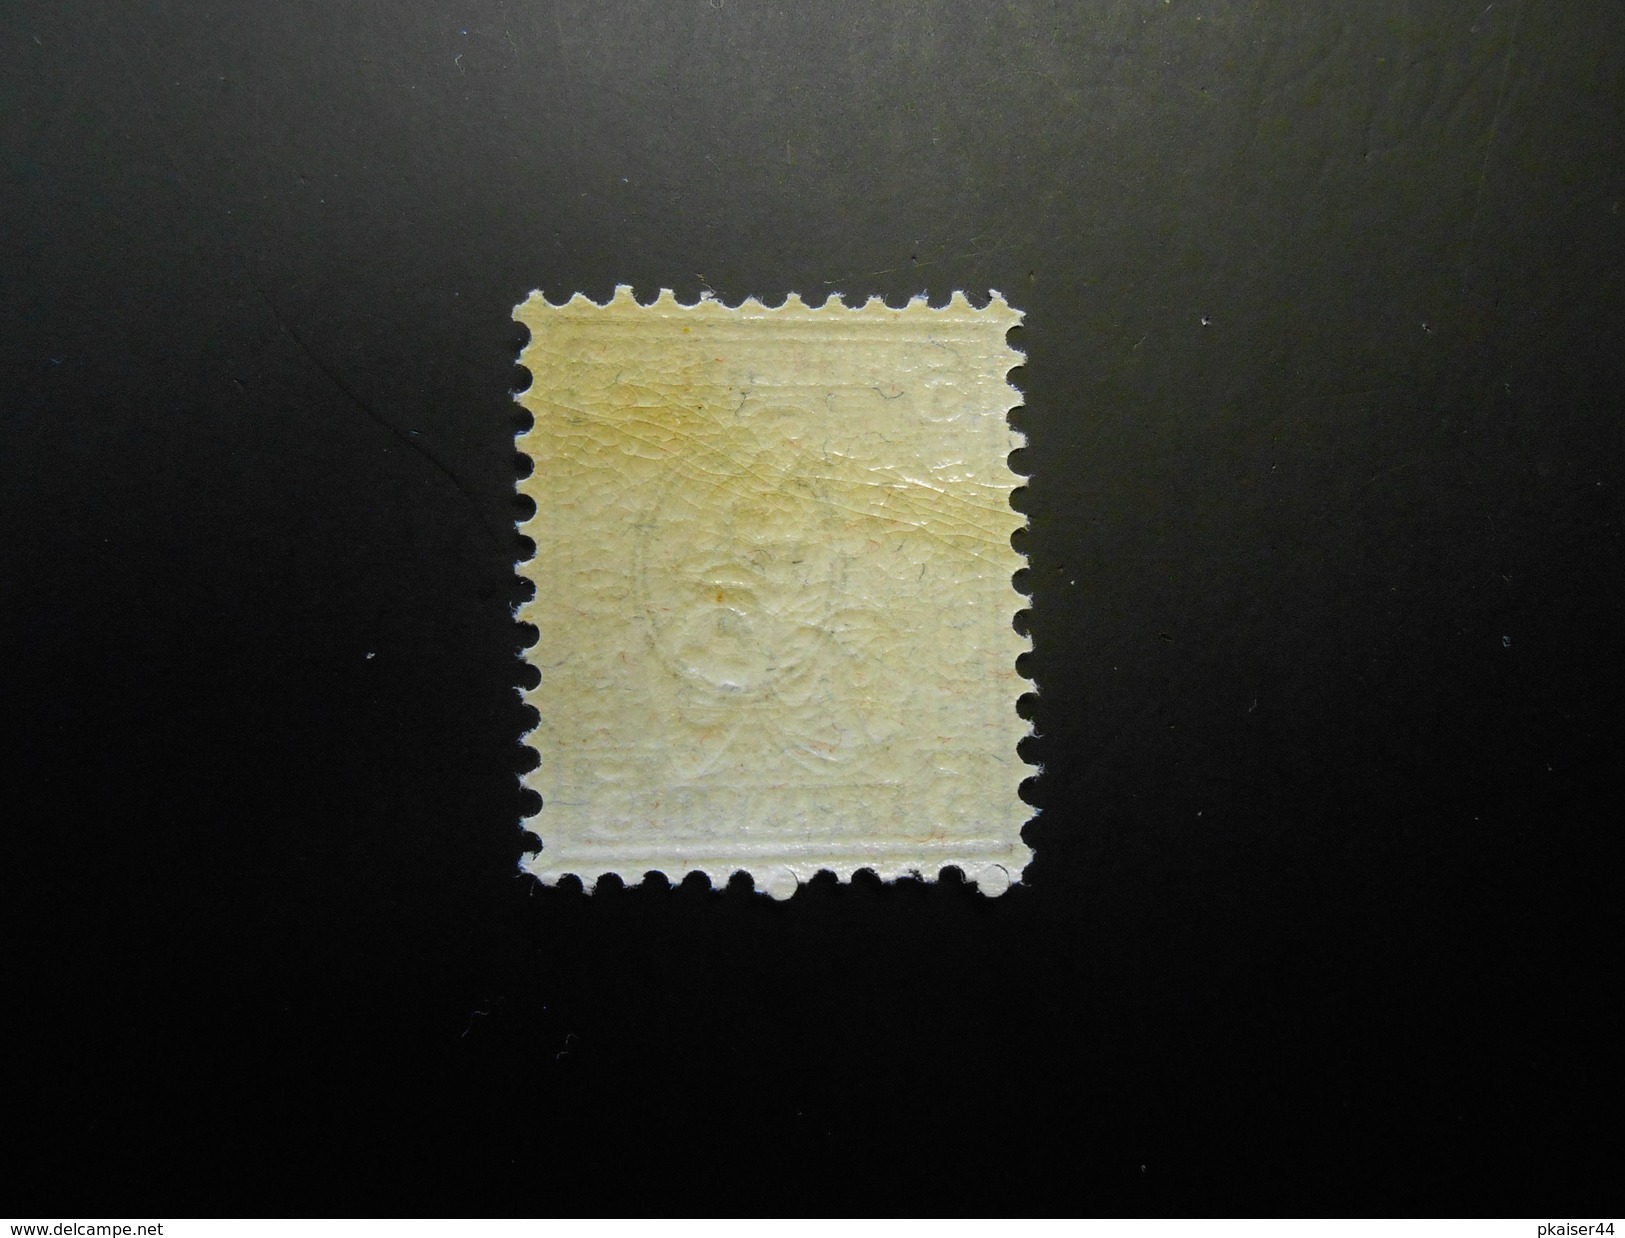 CH ZNr.45/45.2.06/x.1.04/x.1.08/x.1.11 - 5C**/MNH - Sitz. Helvetia 1881 - ABART - Z Kat. Spez. CHF 31.00 - Unused Stamps